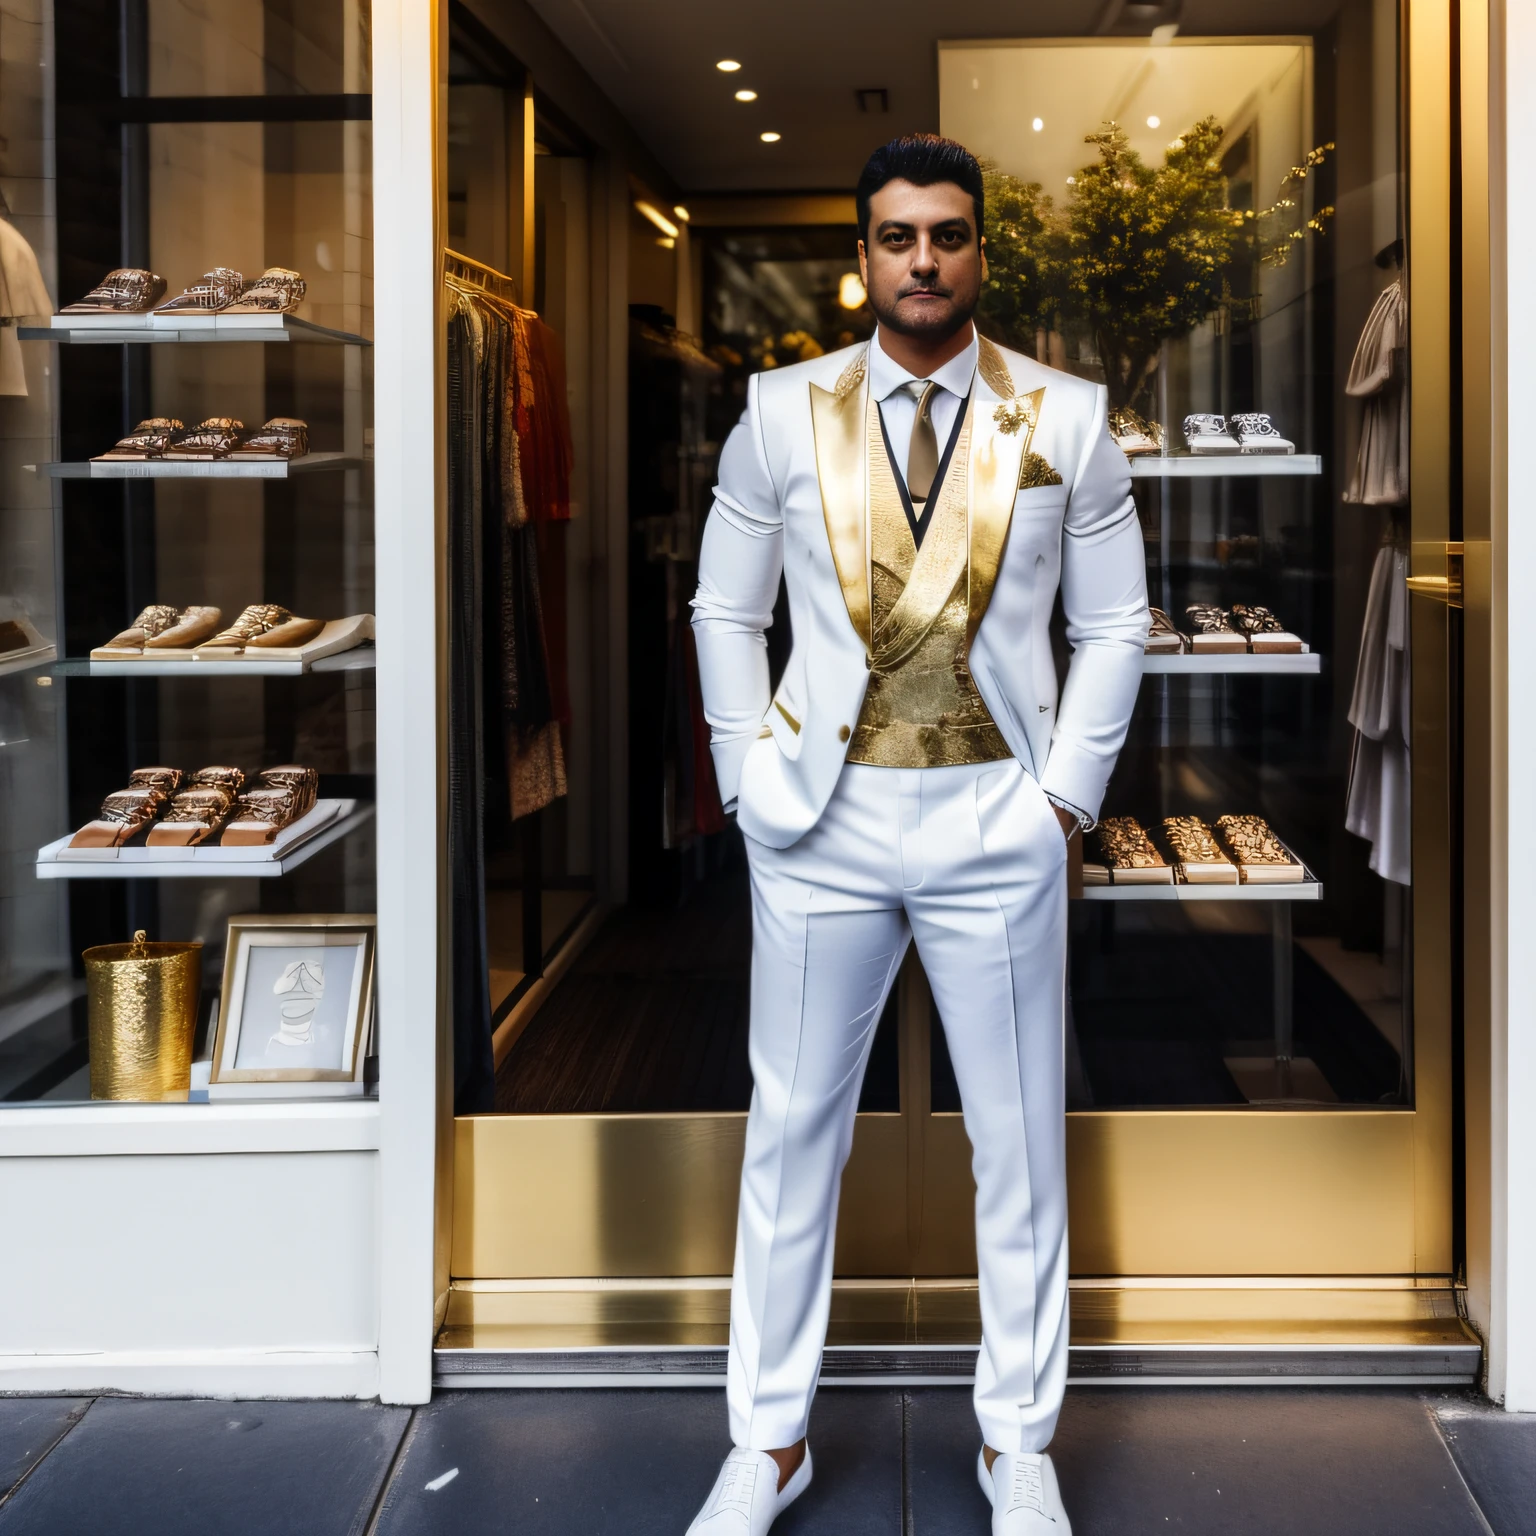 Мужчина в полный рост стоит, прислонившись к витрине уличного магазина, в белом социальном костюме с золотыми вставками и смотрит на магазин в сумерках.